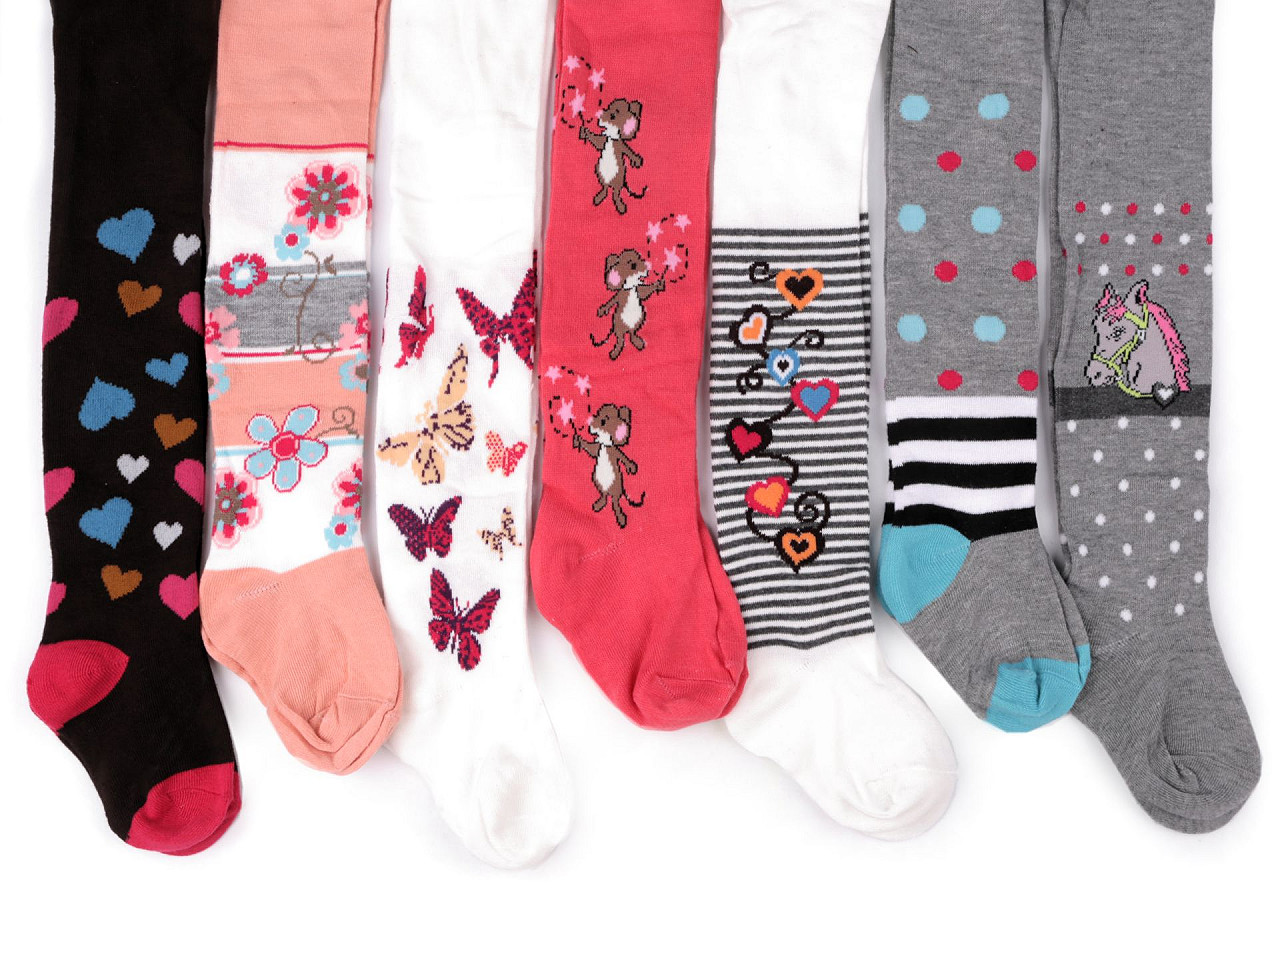 Ciorapi pentru fete, Mărime: 116 - 122, culoare aleatorie, 1 buc